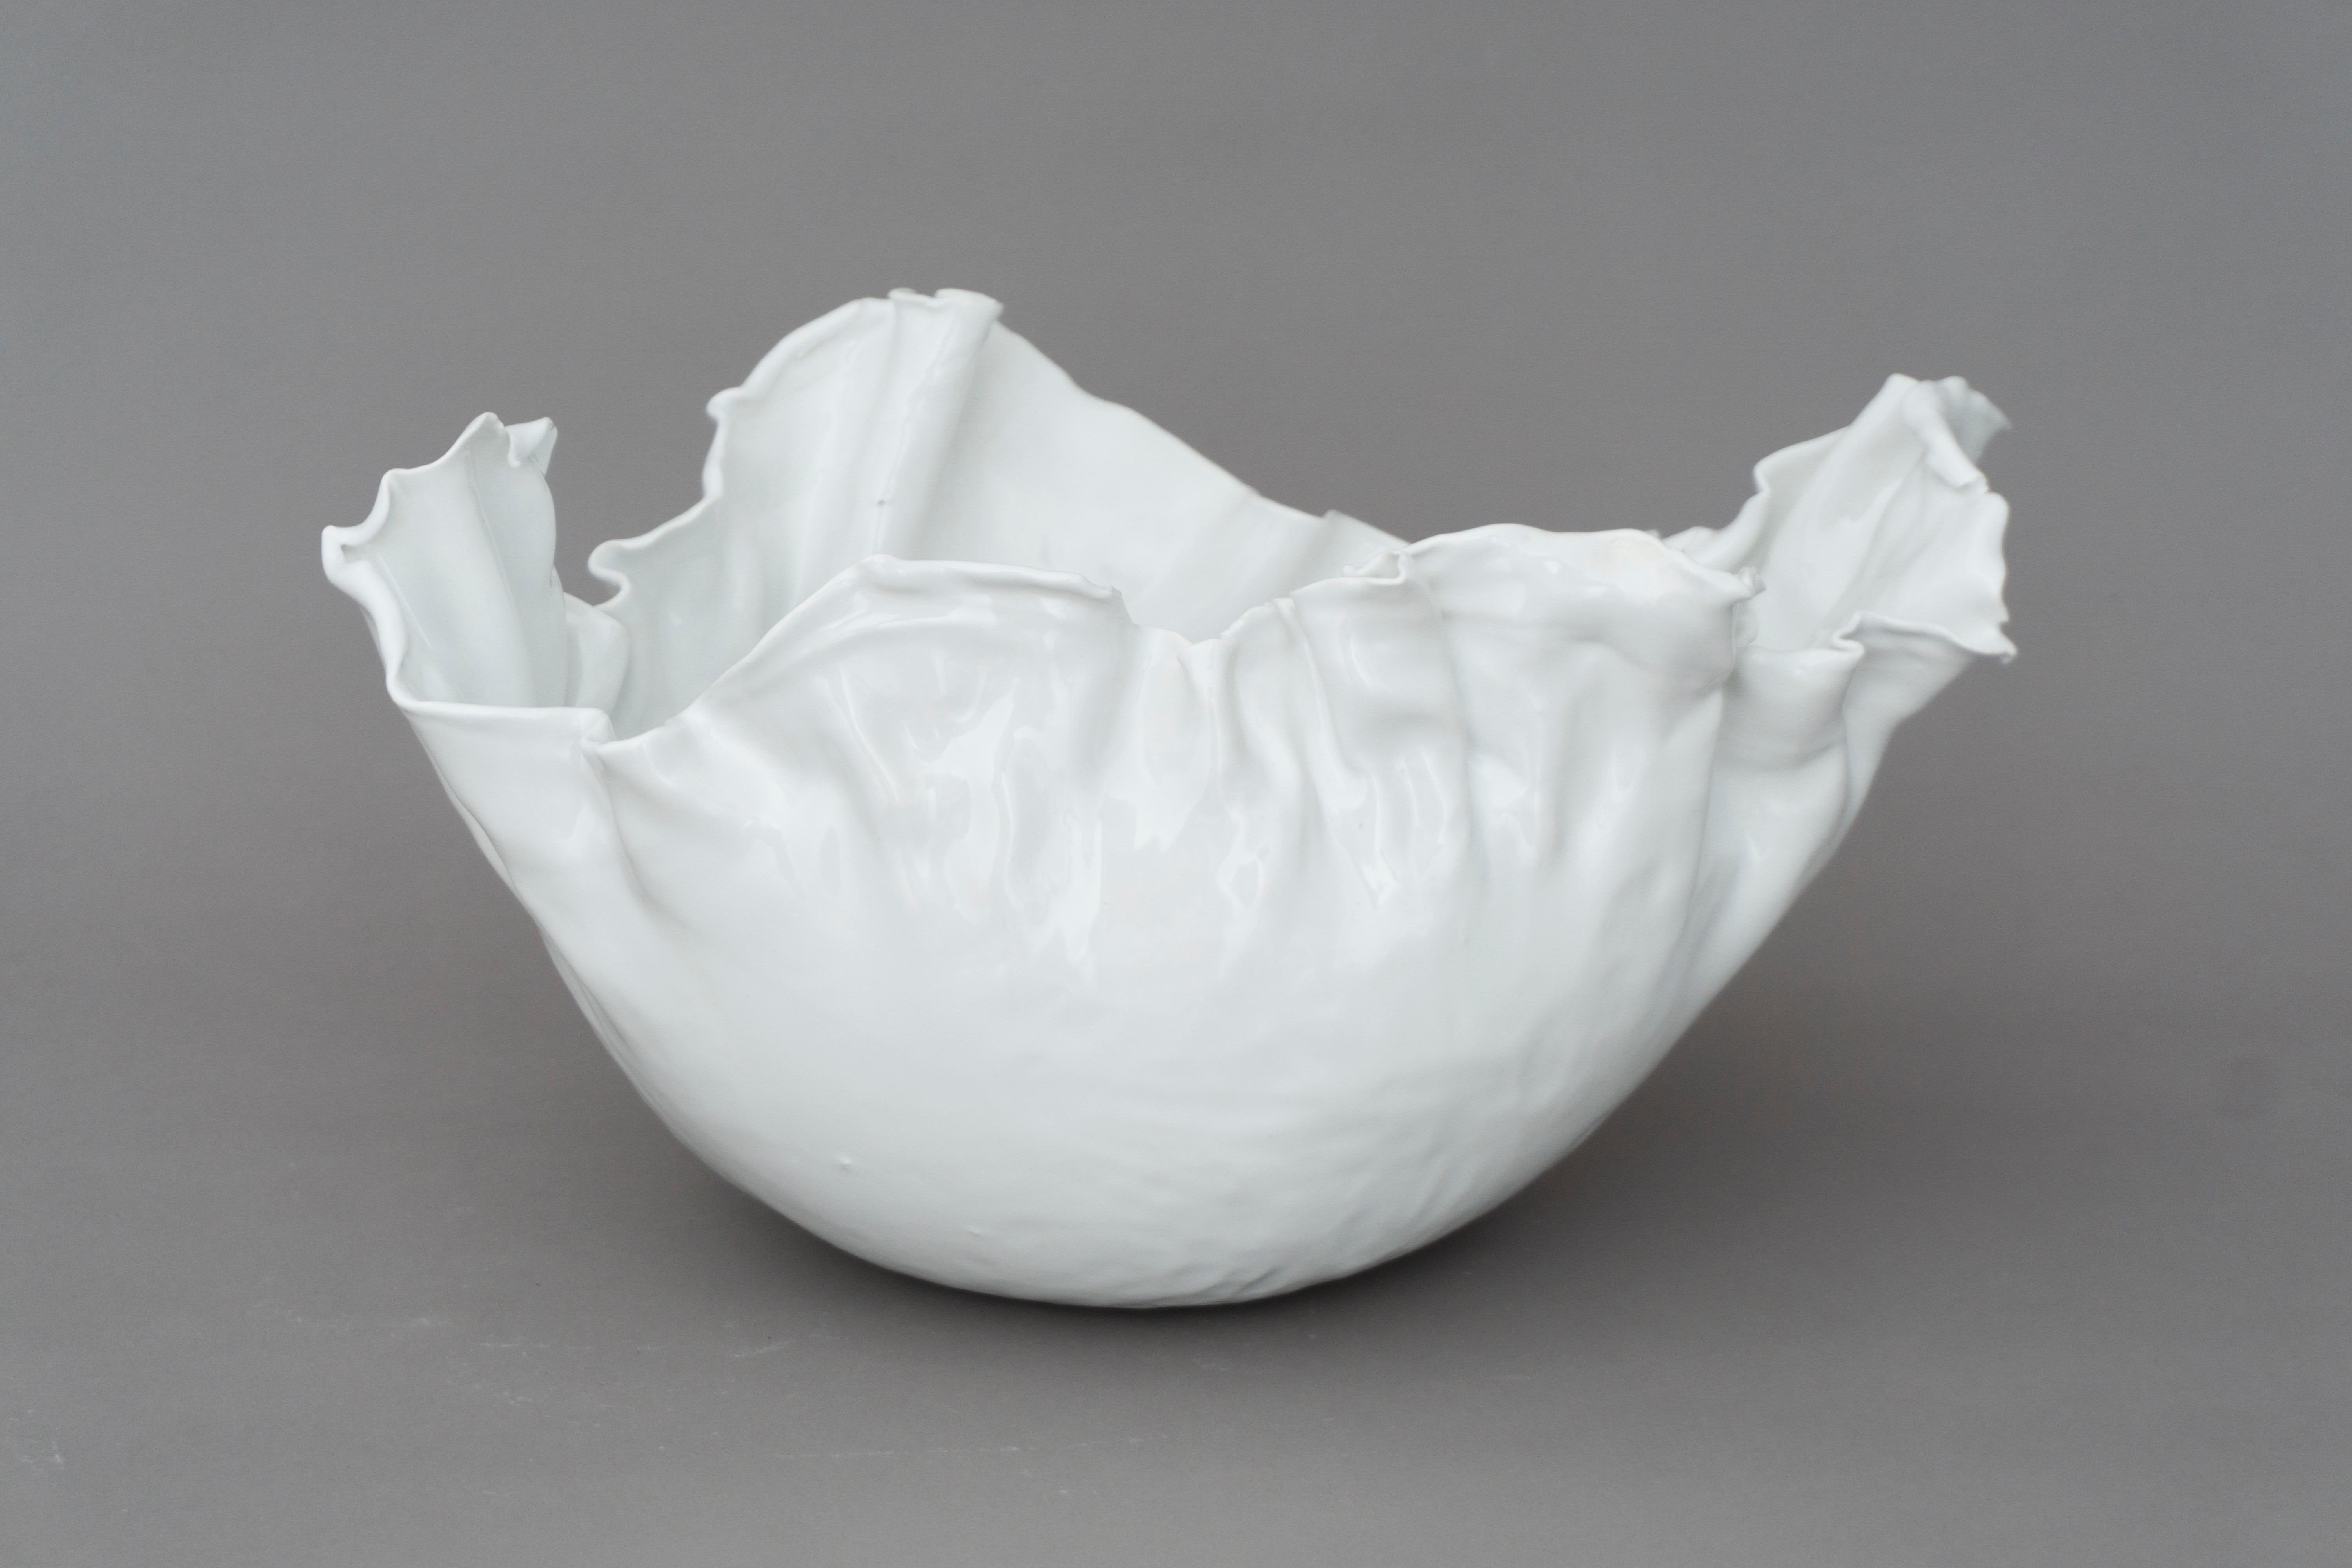 Einzigartige Porzellanschale mit weißer Glasur, eine einfache und elegante Form. Hergestellt von der dänischen Designerin Christine Roland. 
Eine zweite Version ist verfügbar. 

christine Roland ist eine in Berlin lebende Keramikerin, die